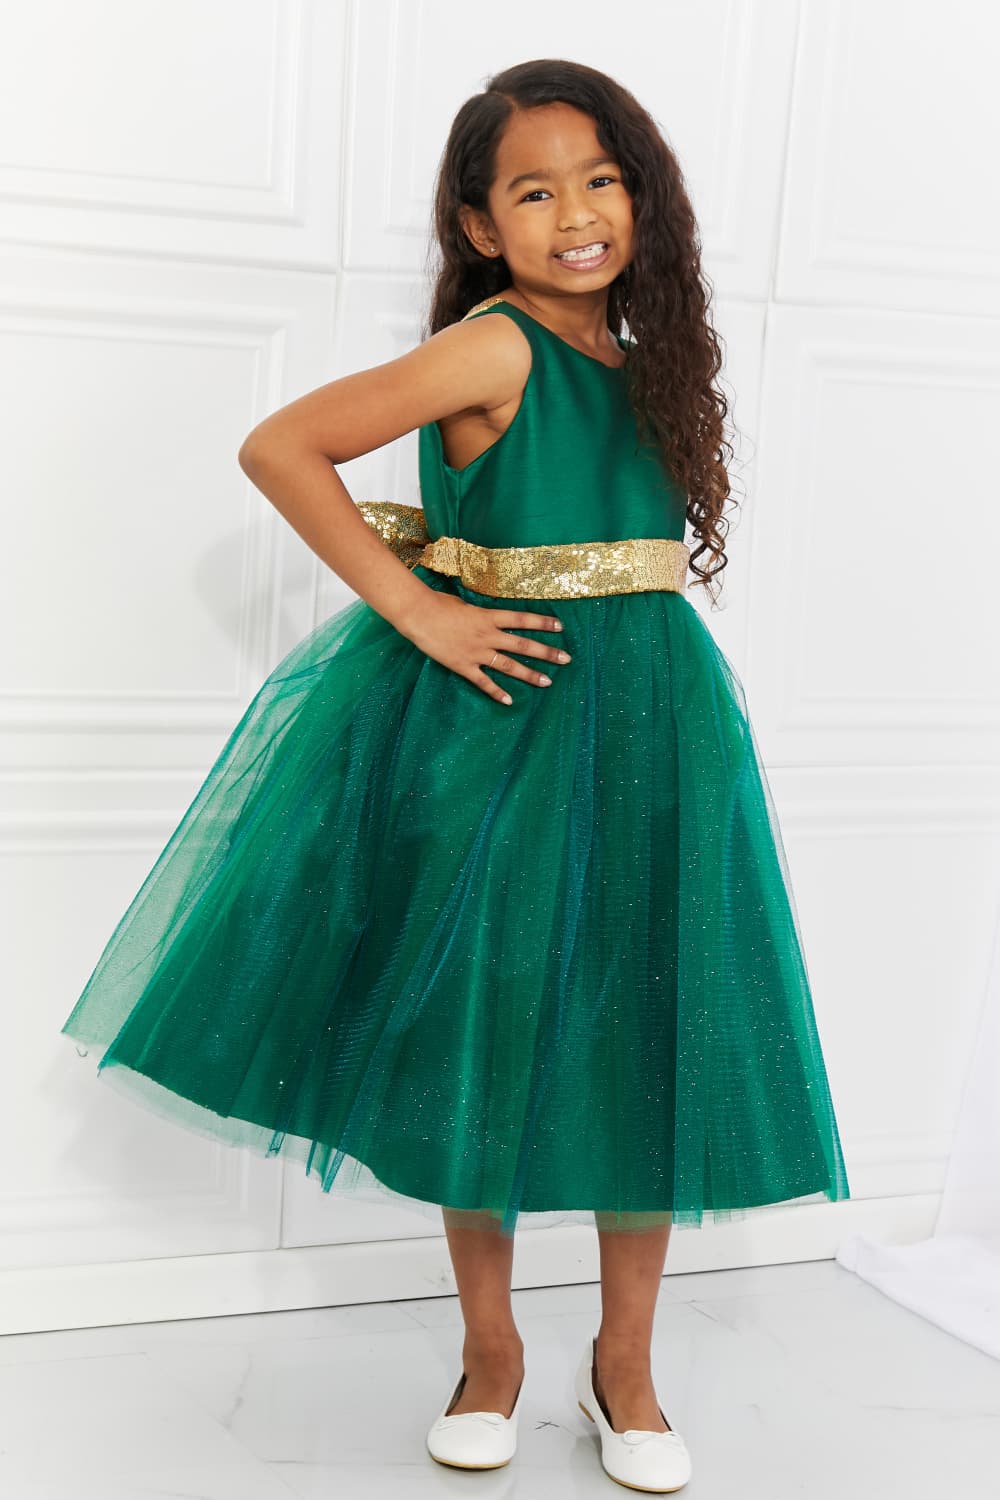 Kid's Dream Little Miss Classy Tutu Dress in Green